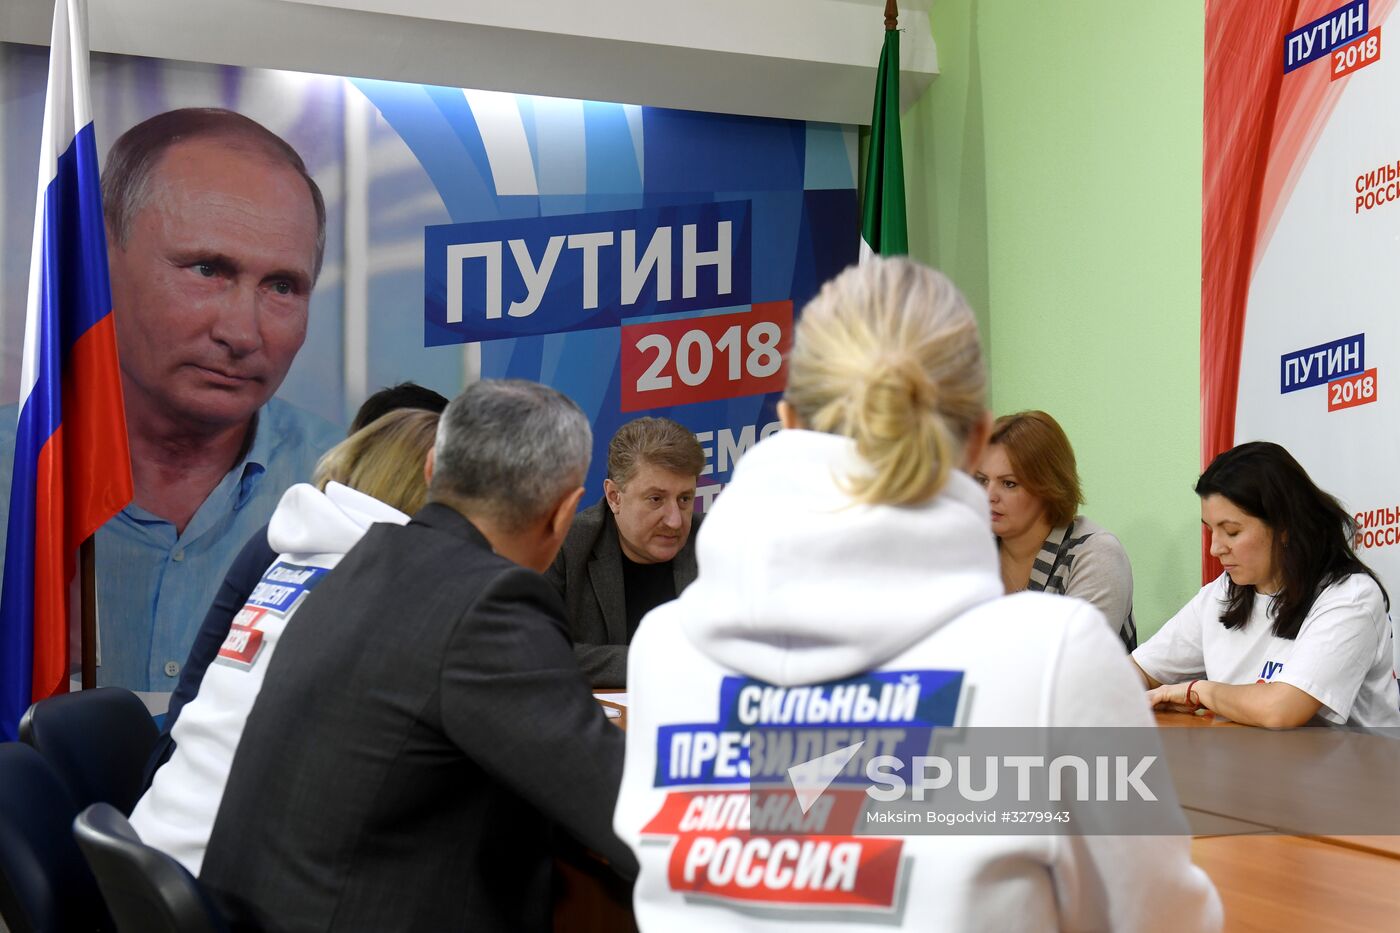 Campaign headquarters of incumbent Russian President Vladimir Putin